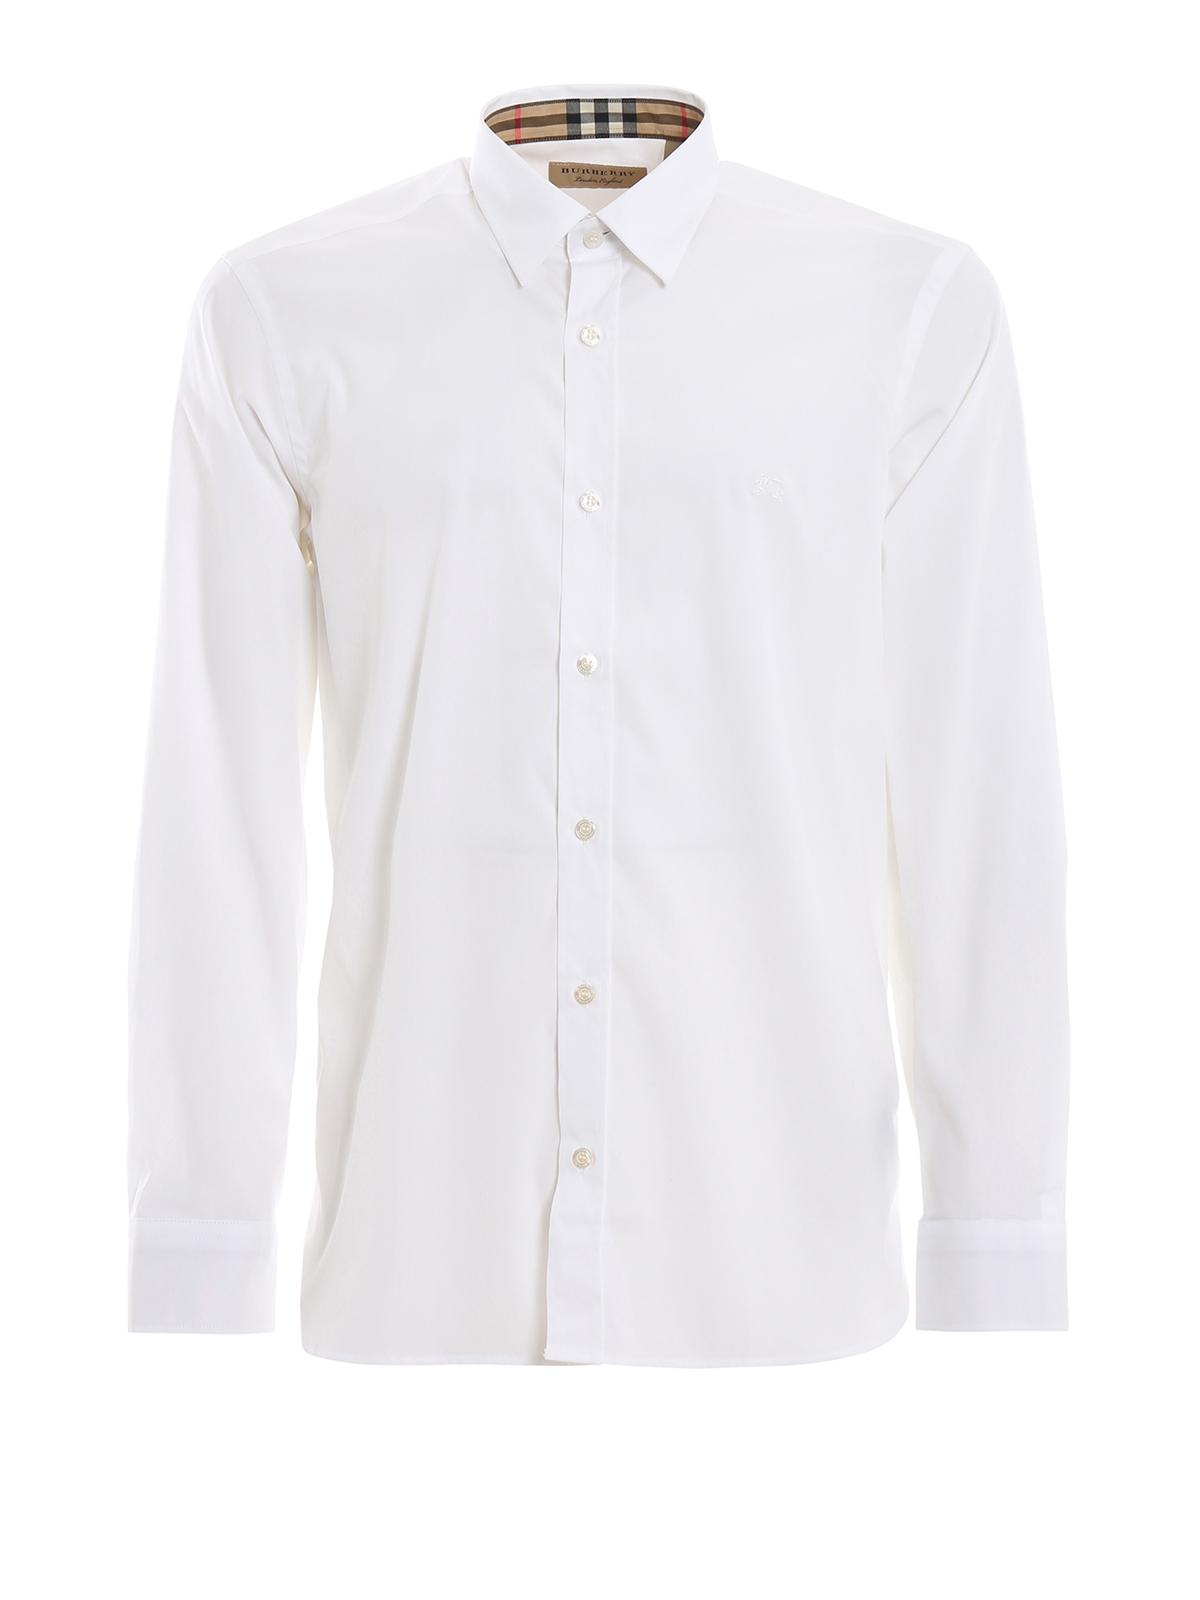 Burberry - White stretch cotton shirt 